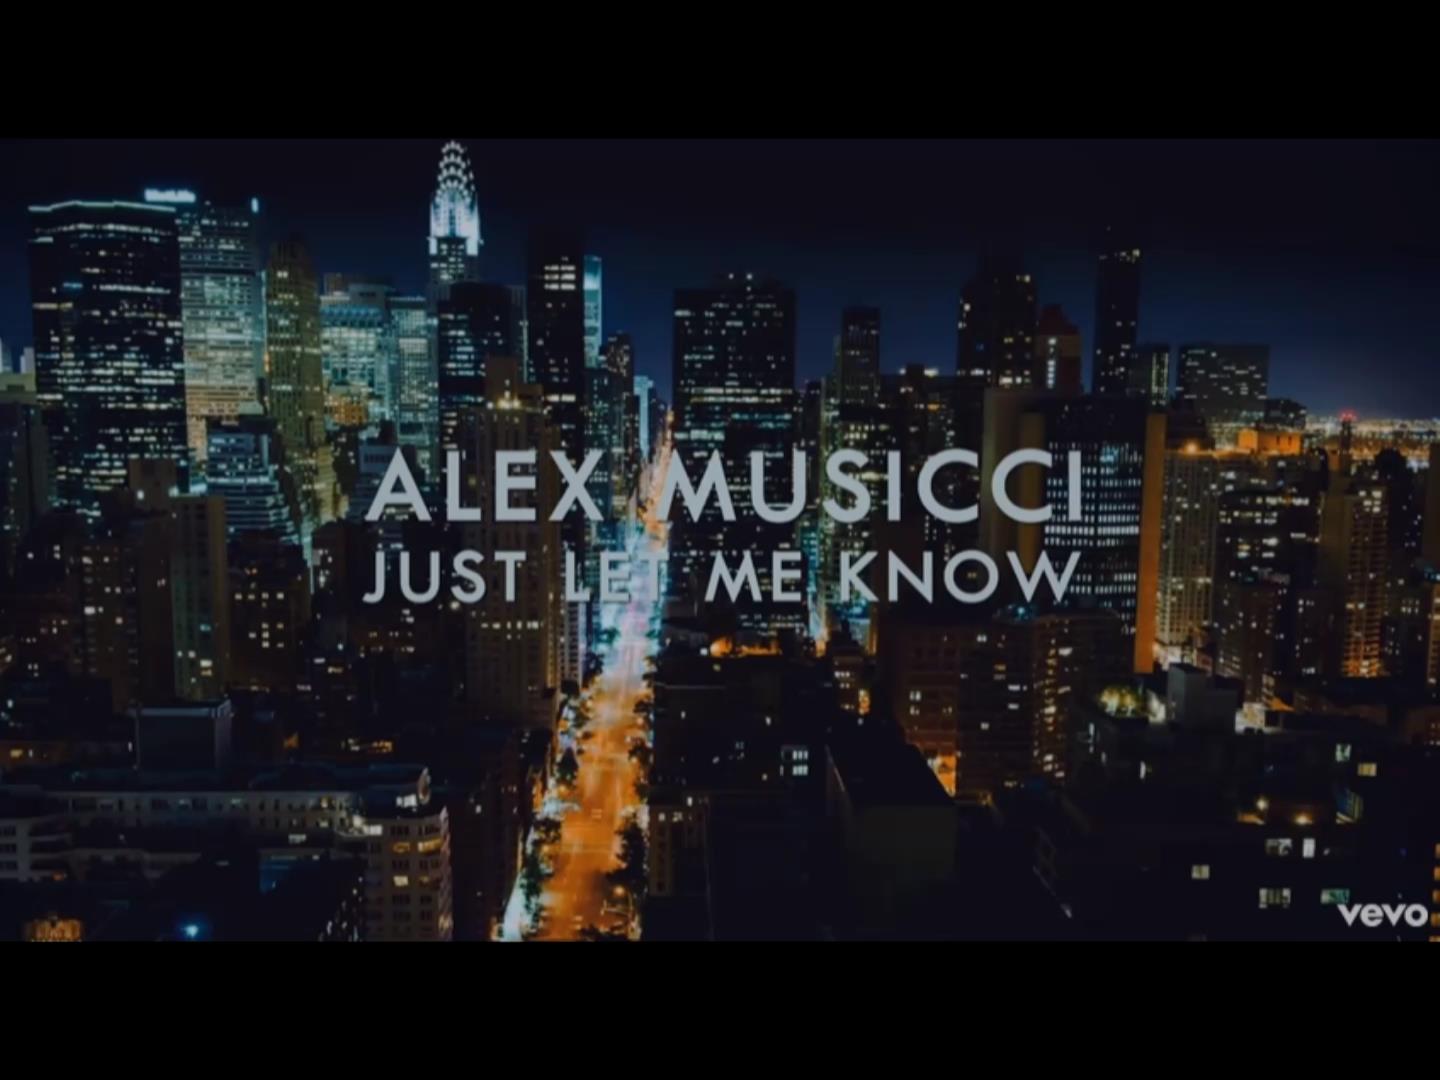  Alex Musicci – “Just Let Me Know”